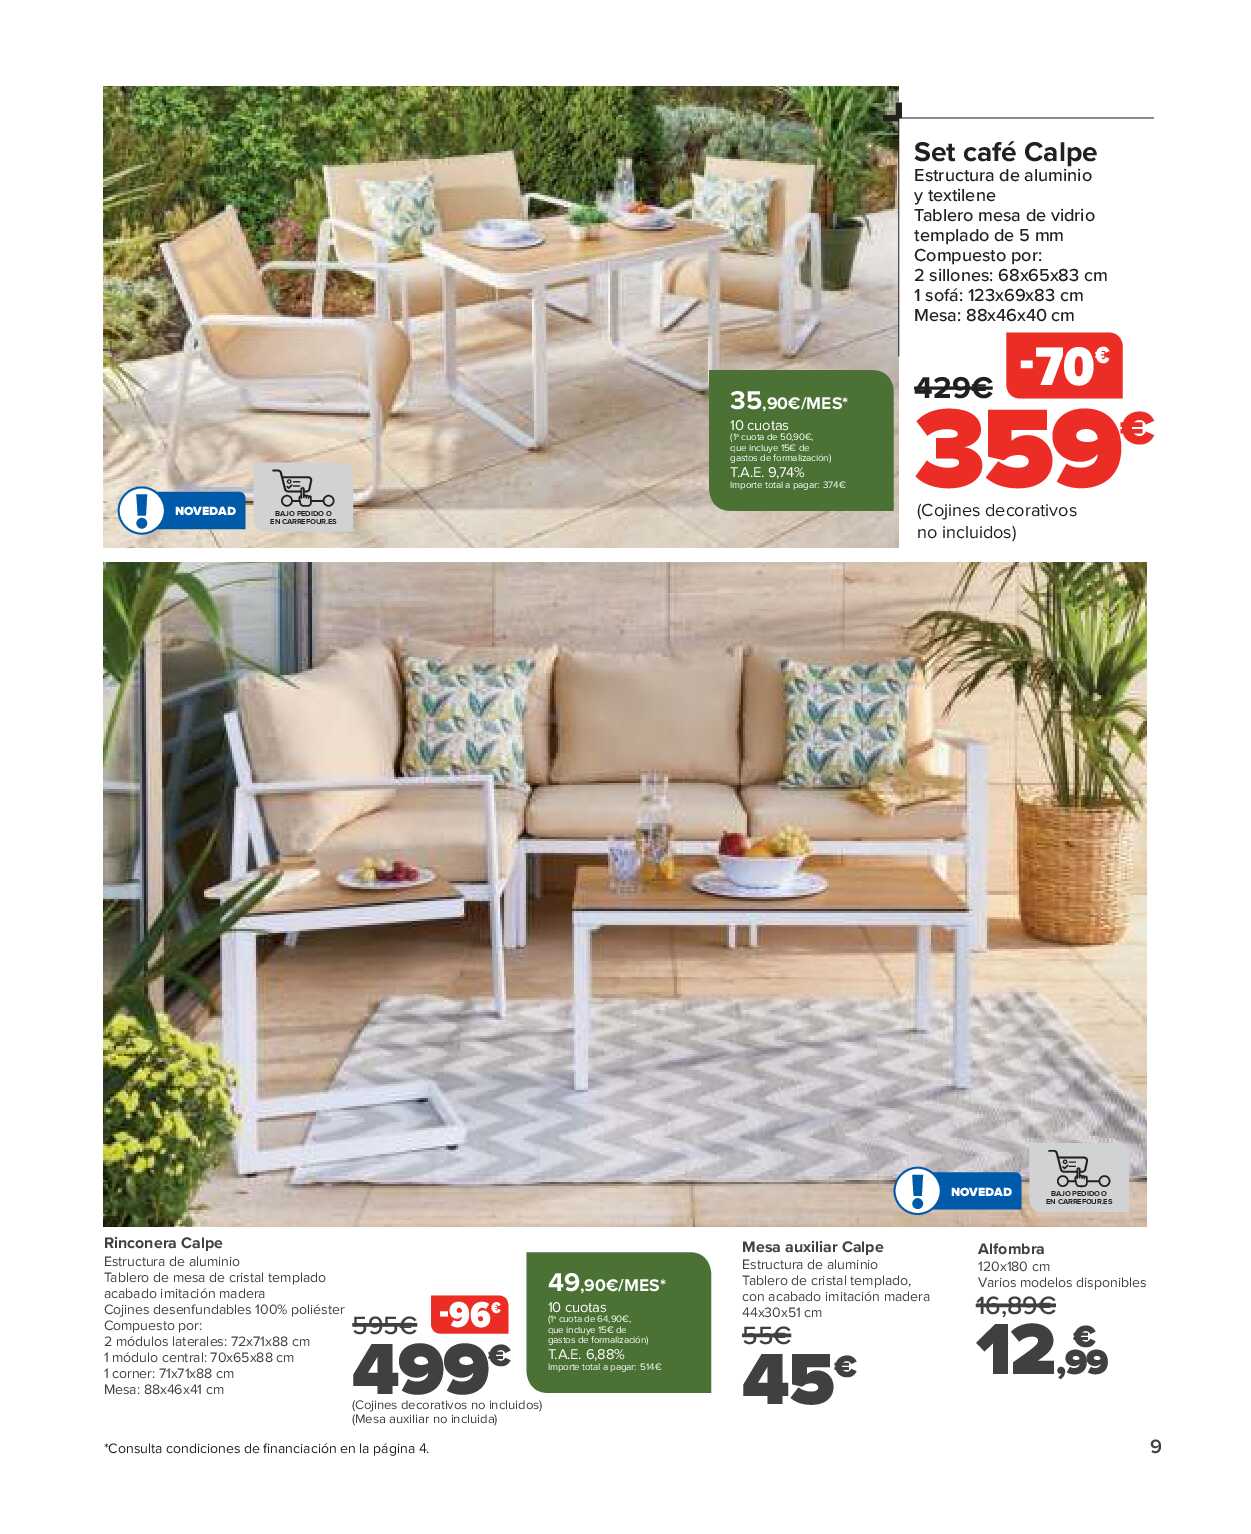 Conjuntos jardín, sillas playa, piscinas, plantas Carrefour. Página 09